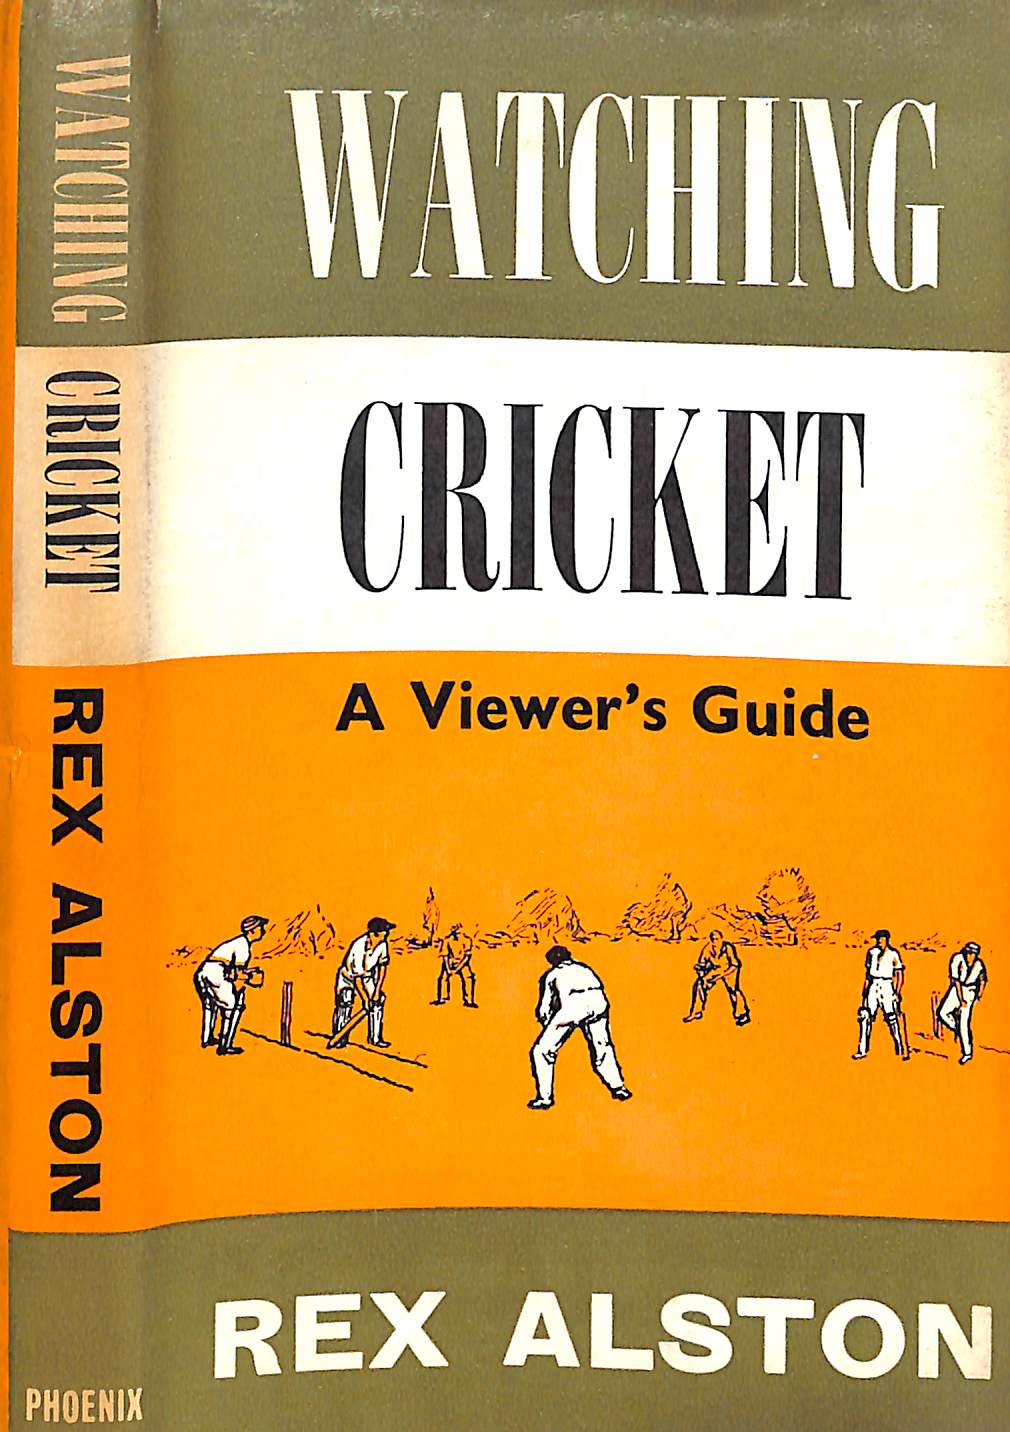 "Watching Cricket" 1962 ALSTON, Rex